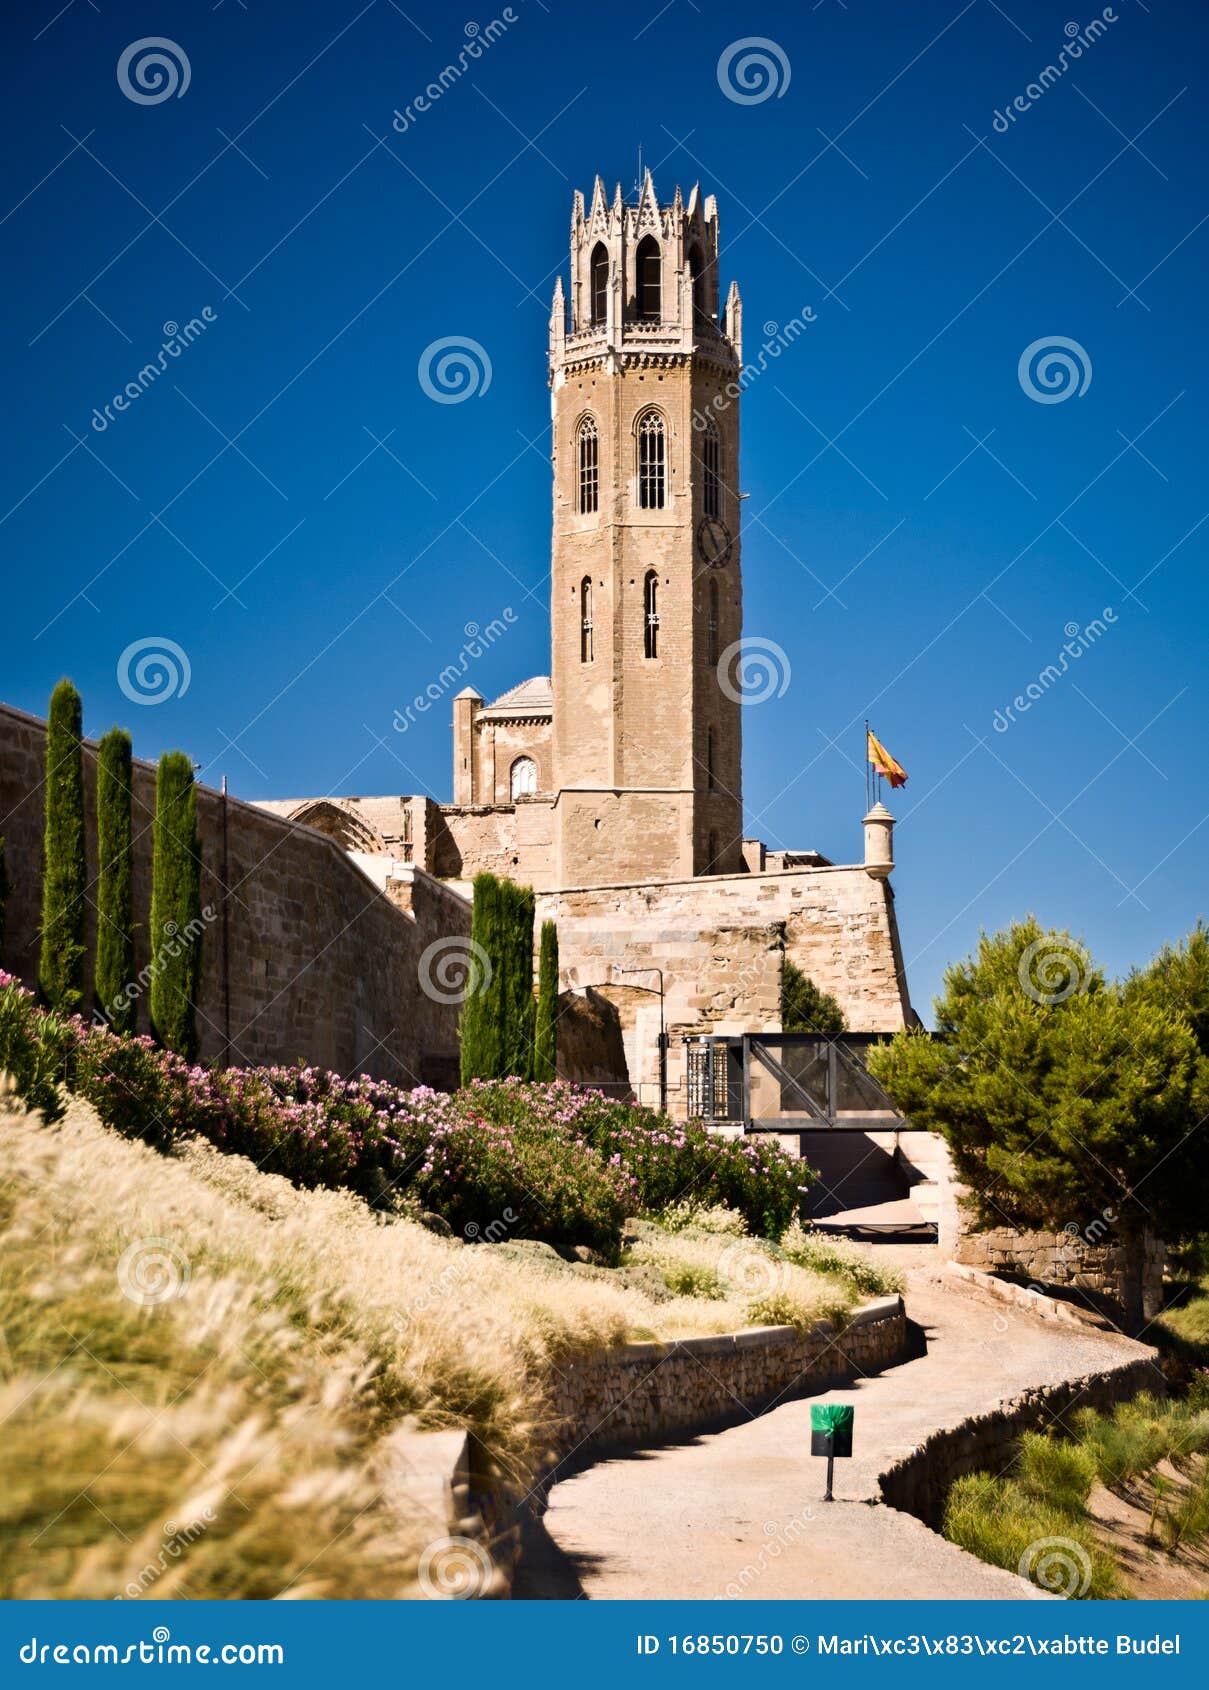 cathedral of sue vella, lleida, catalunya, spain